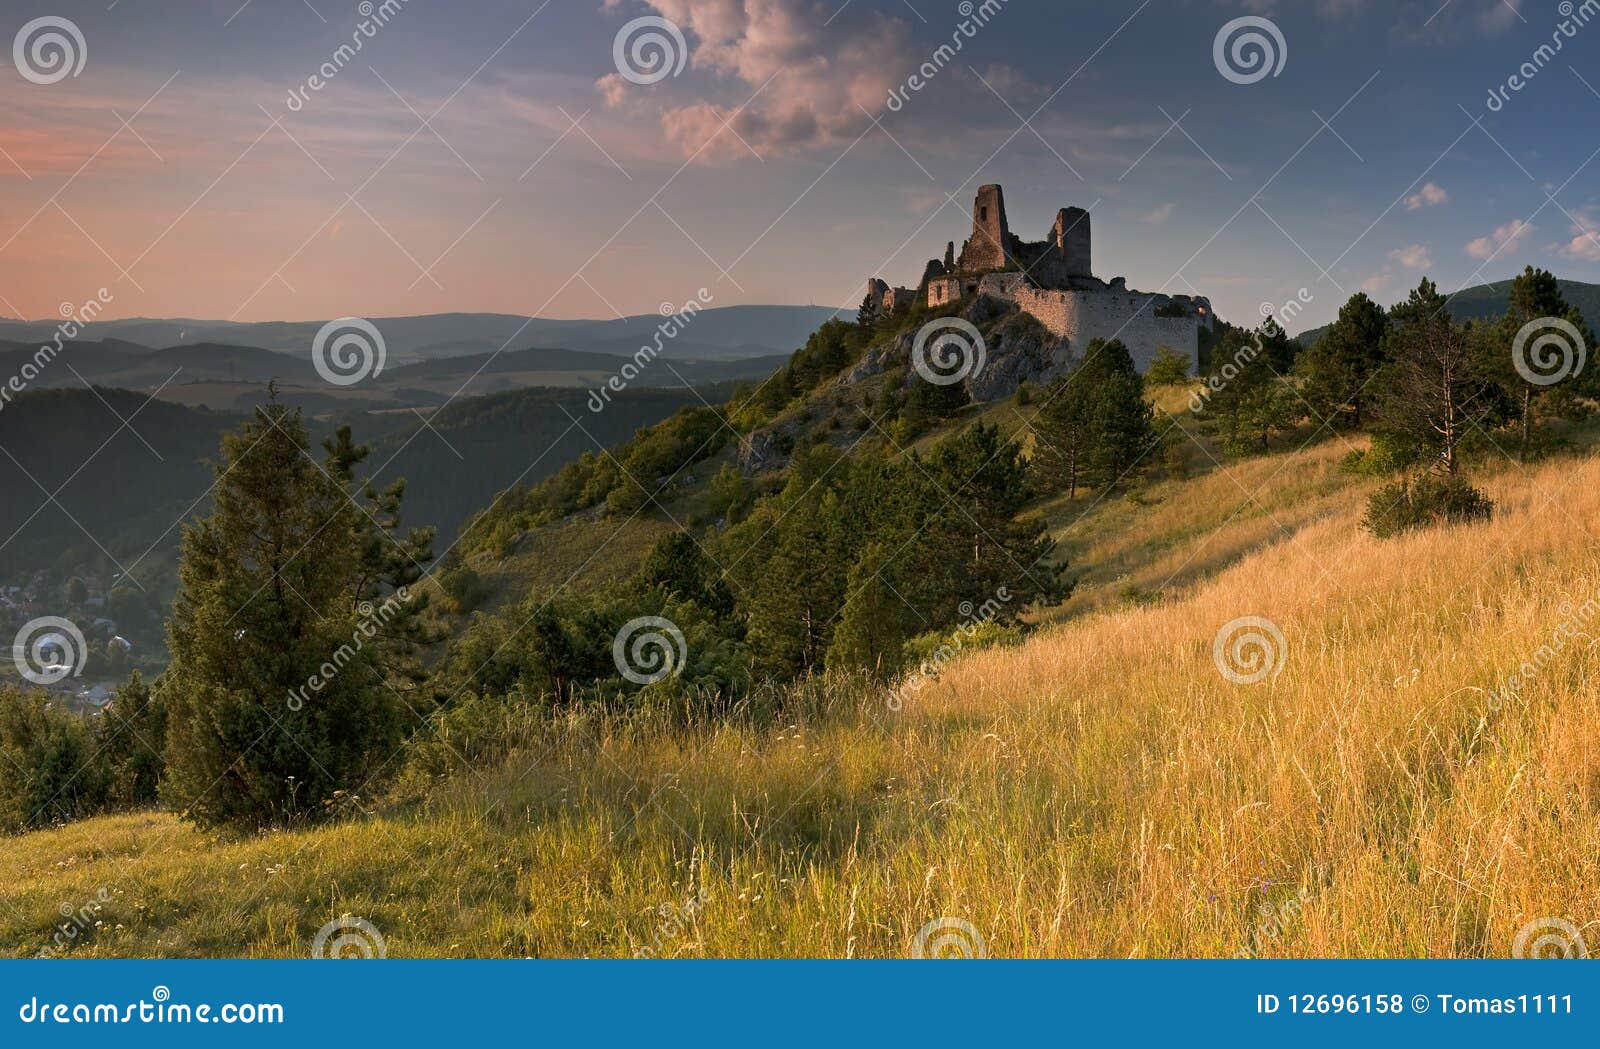 Una vista del castillo arruinado de Cachtice situado en las montañas sobre la aldea de Cachtice en al oeste de Eslovaquia en la región de Trencin. El castillo de Cachtice era residencia del mundo Elizabeth famosa Batory y está definitivamente digno de una visita.